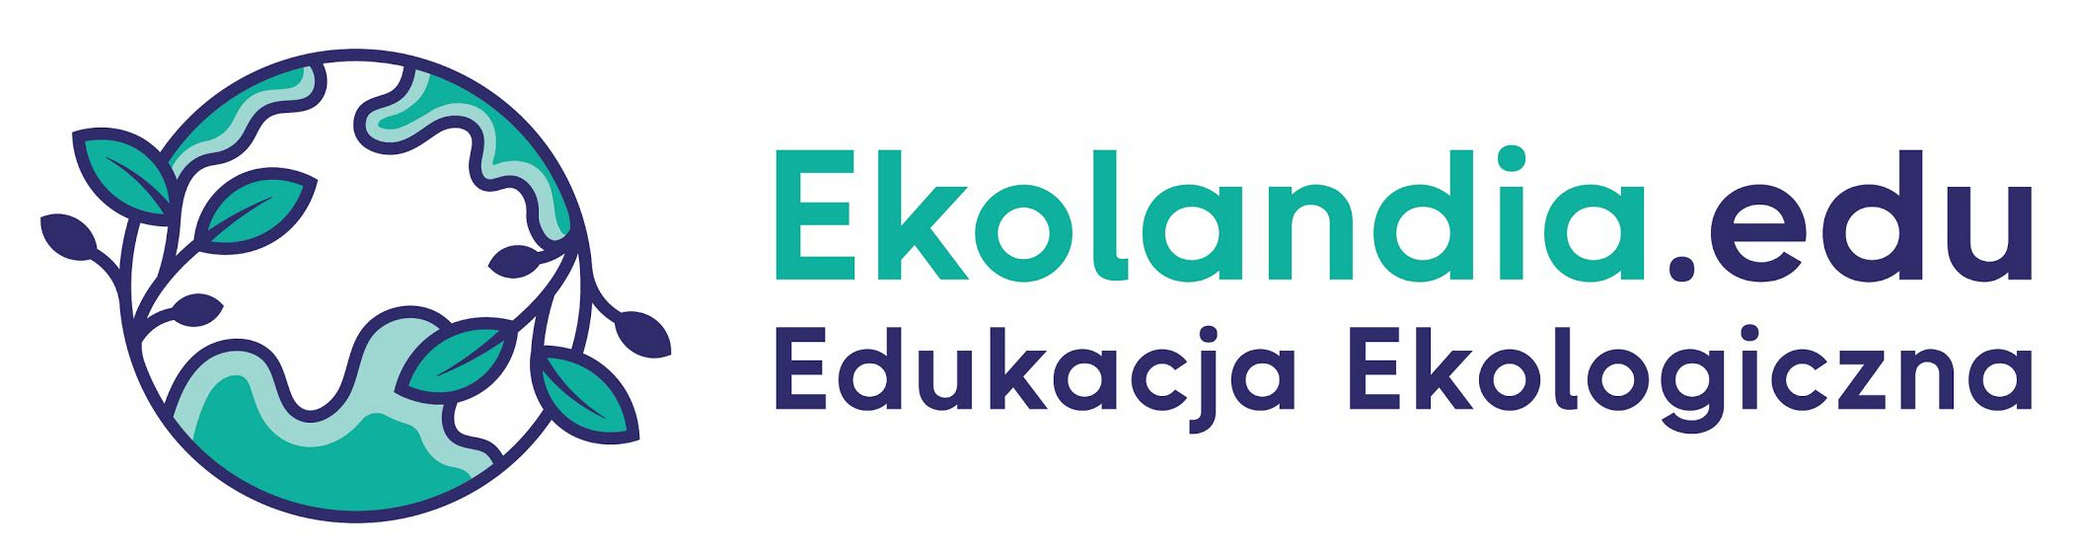 ekolandia.edu